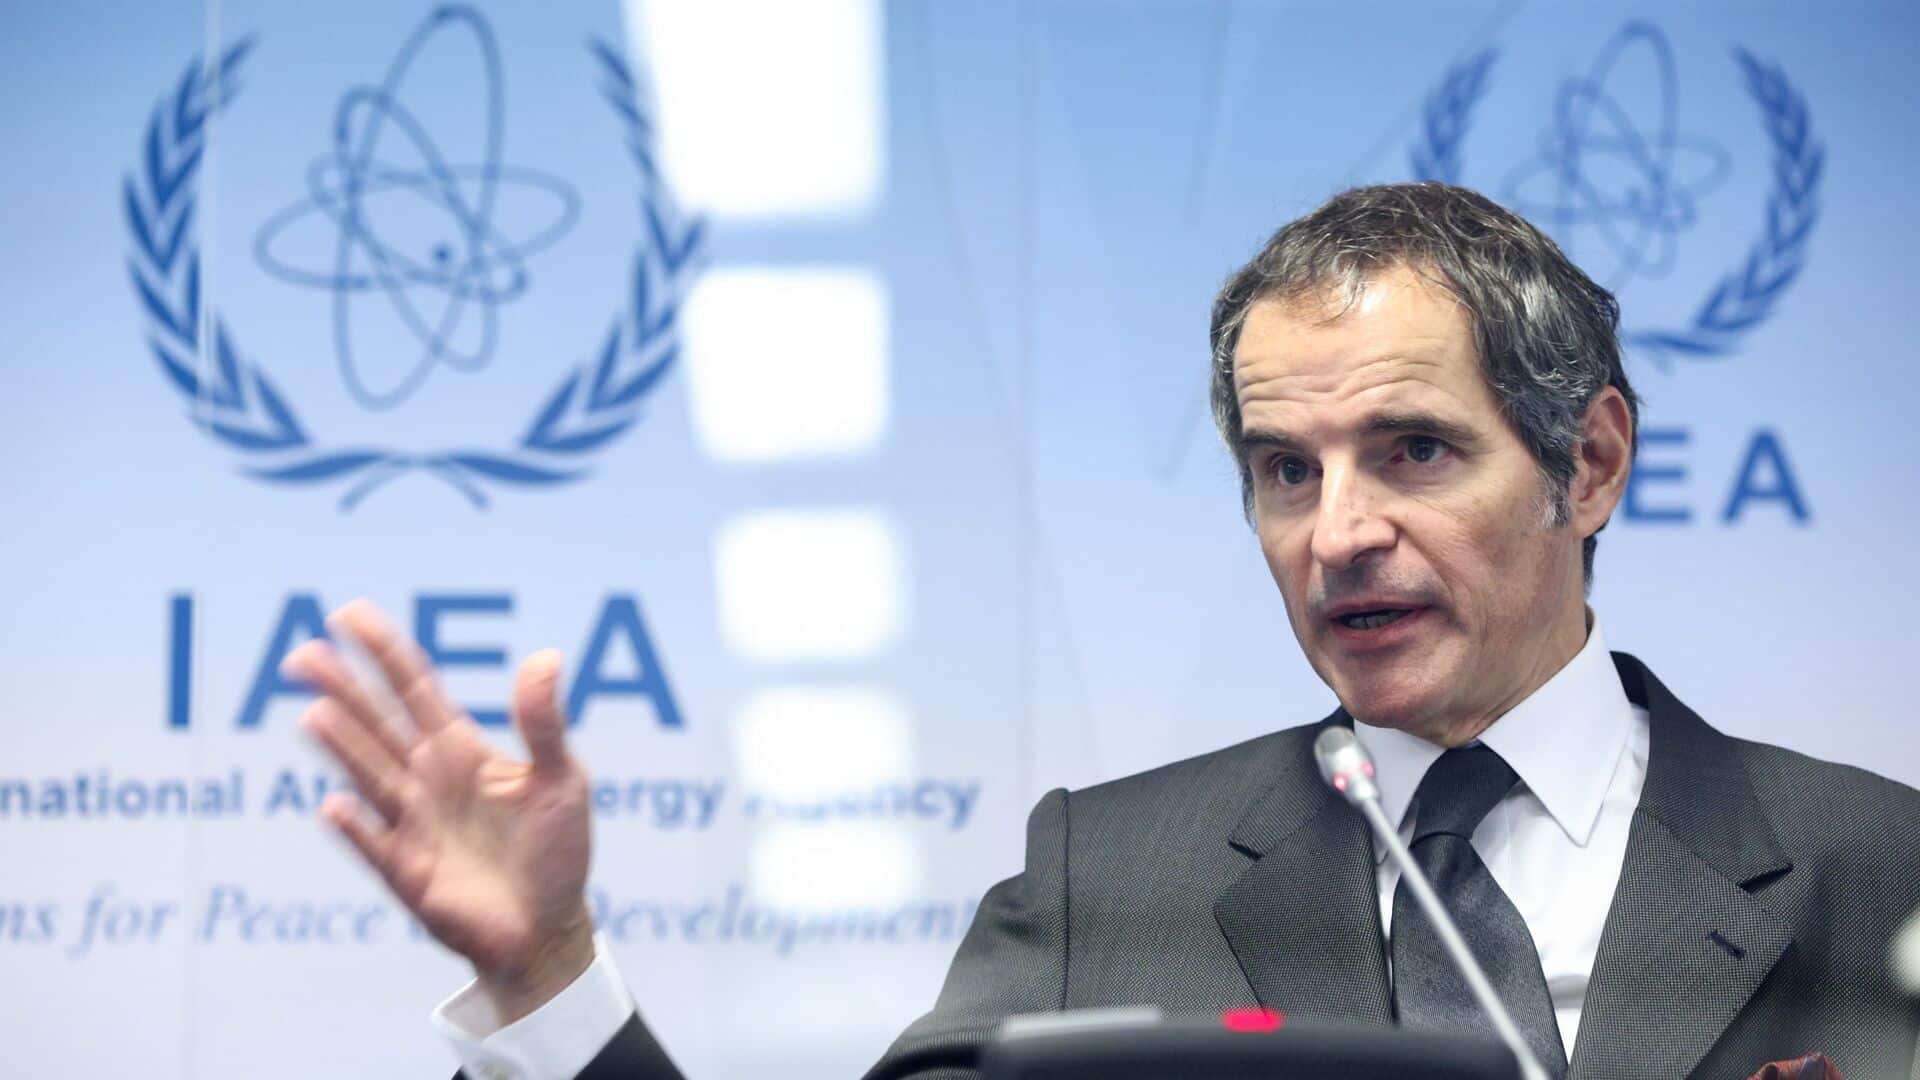 الوكالة الدولية للطاقة الذرية تعلن استمرارية إيران في تخصيب اليورانيوم وإنتهاك إتفاقية 2015